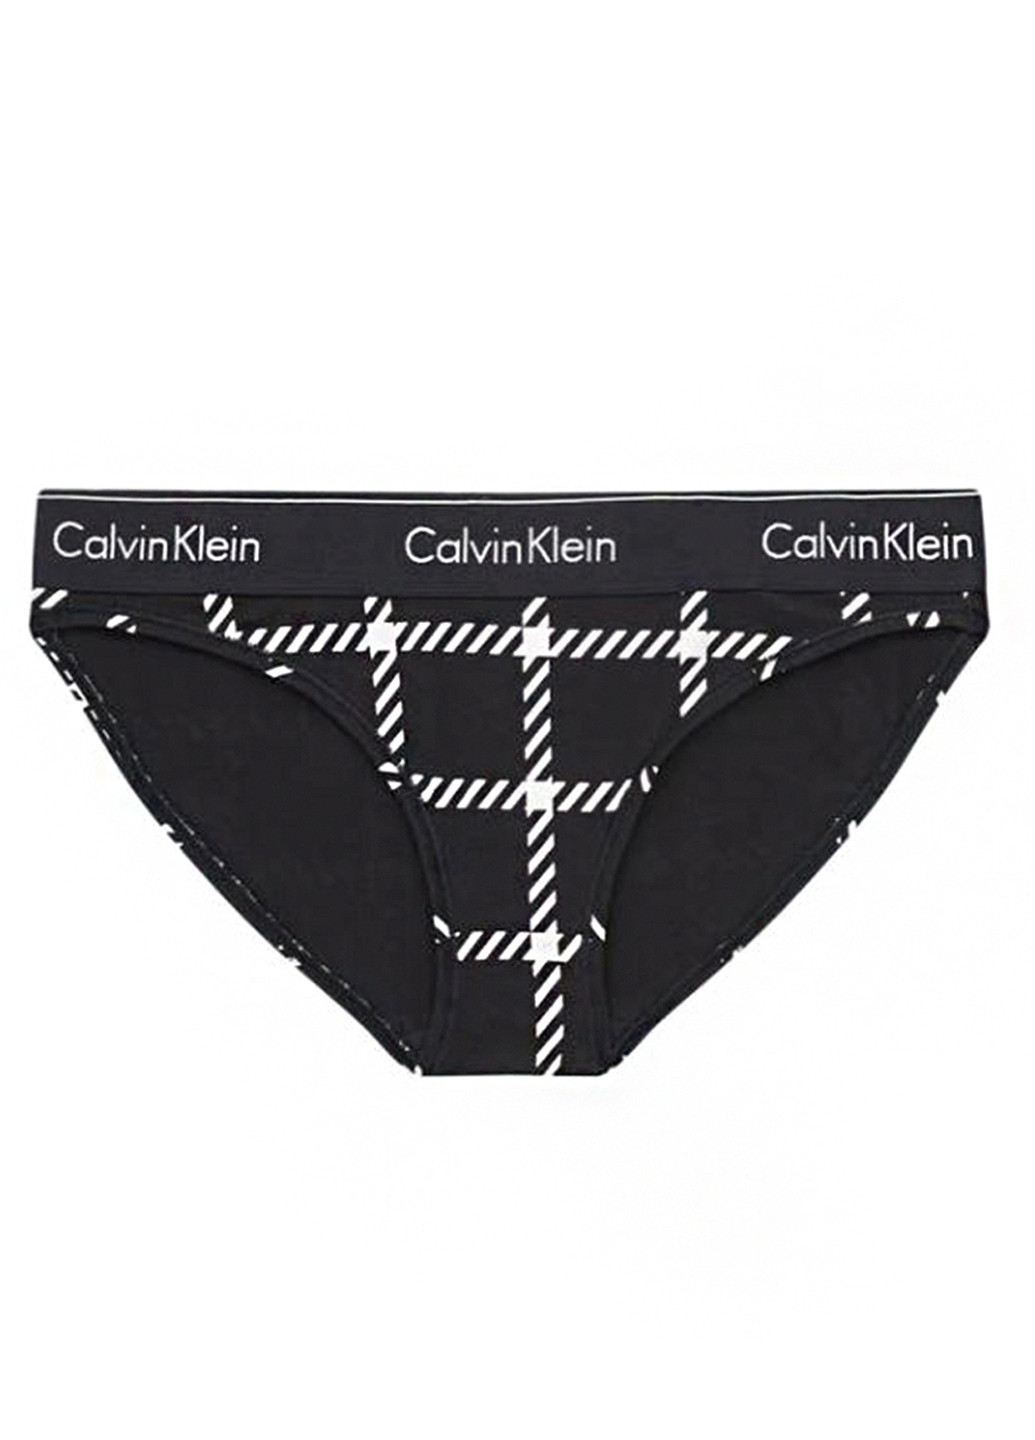 Черный демисезонный комплект (бюстгальтер, трусики) Calvin Klein